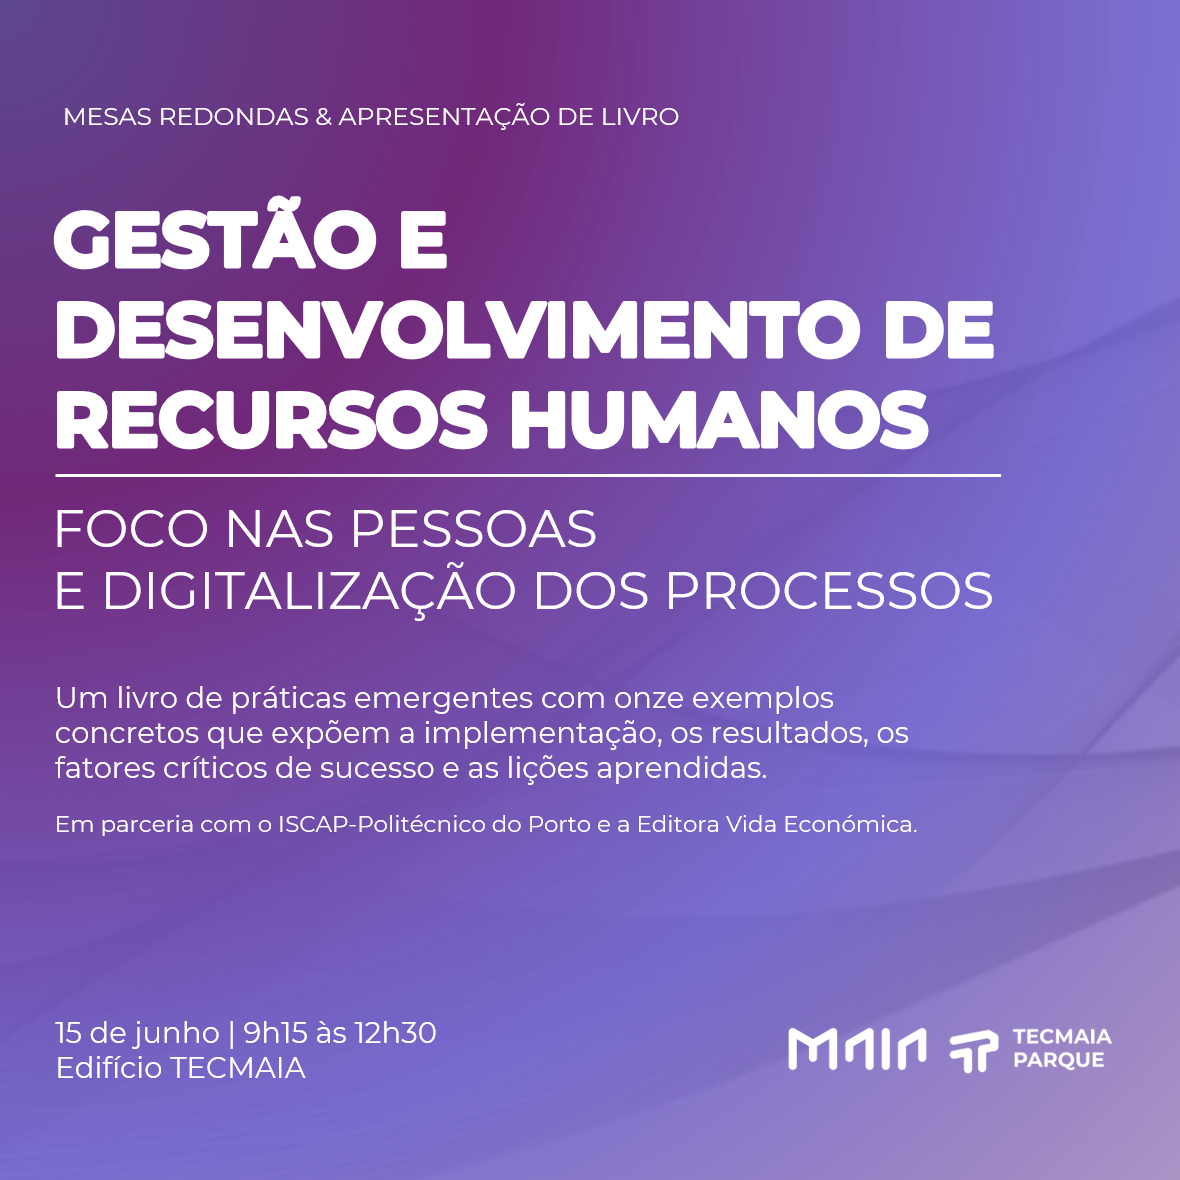 Apresentação de Livro & Mesas Redondas "Foco nas Pessoas e Digitalização dos Processos"